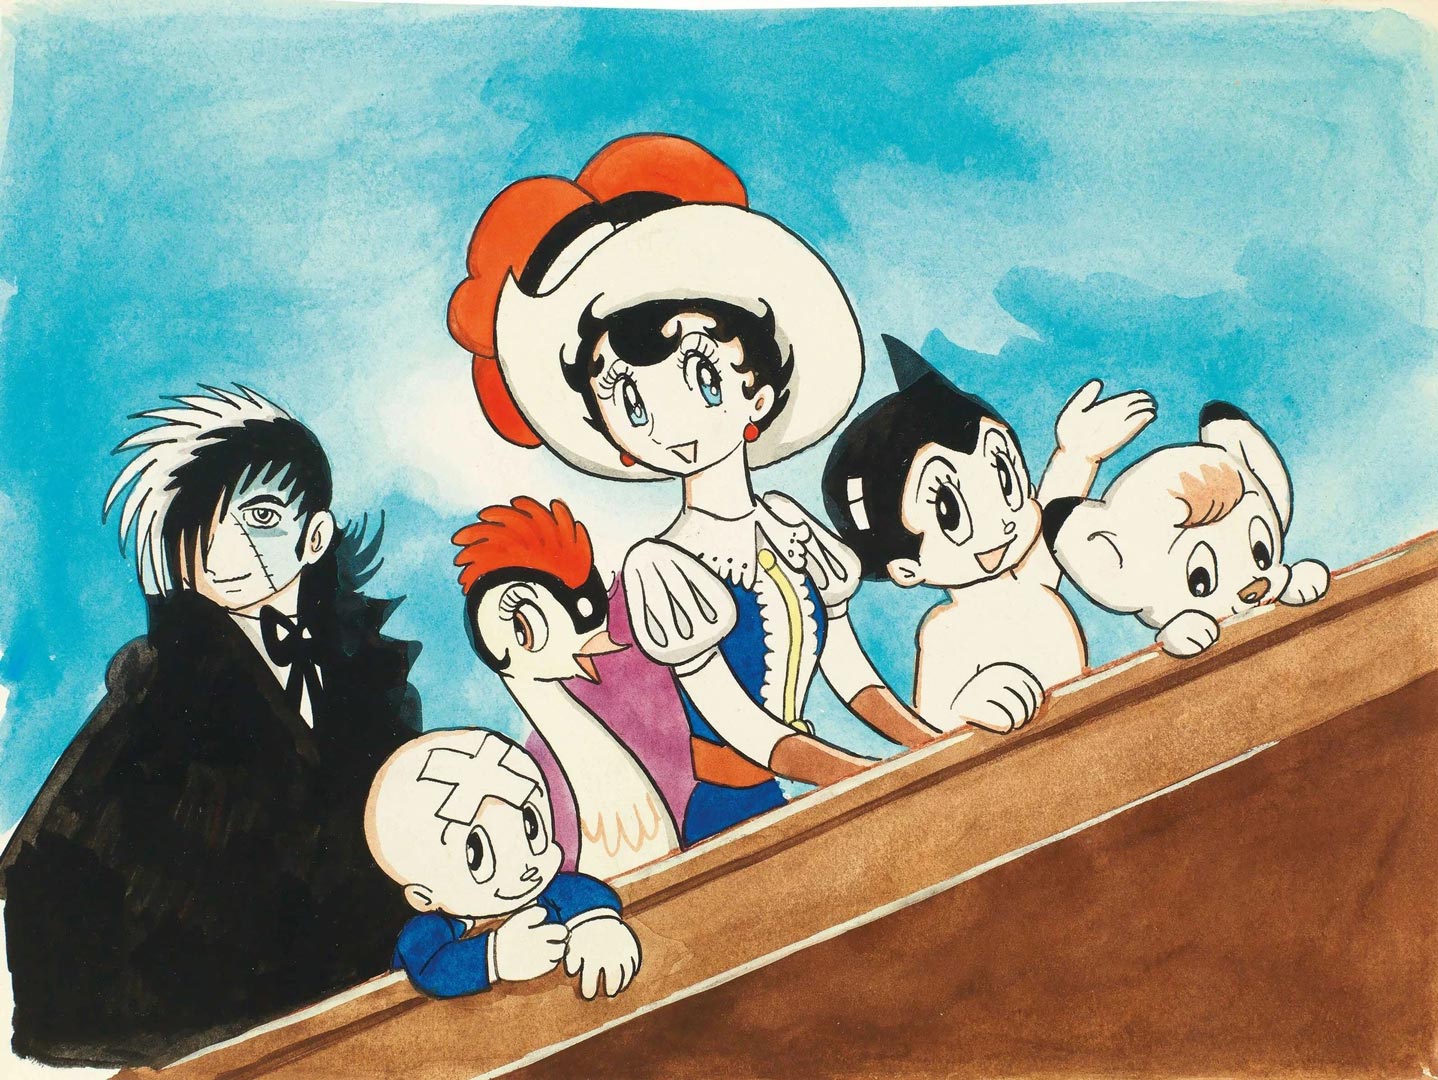 شخصیتهای اصلی آثار اوسامو تزوکا مثل کیمبا و آسترو بوی